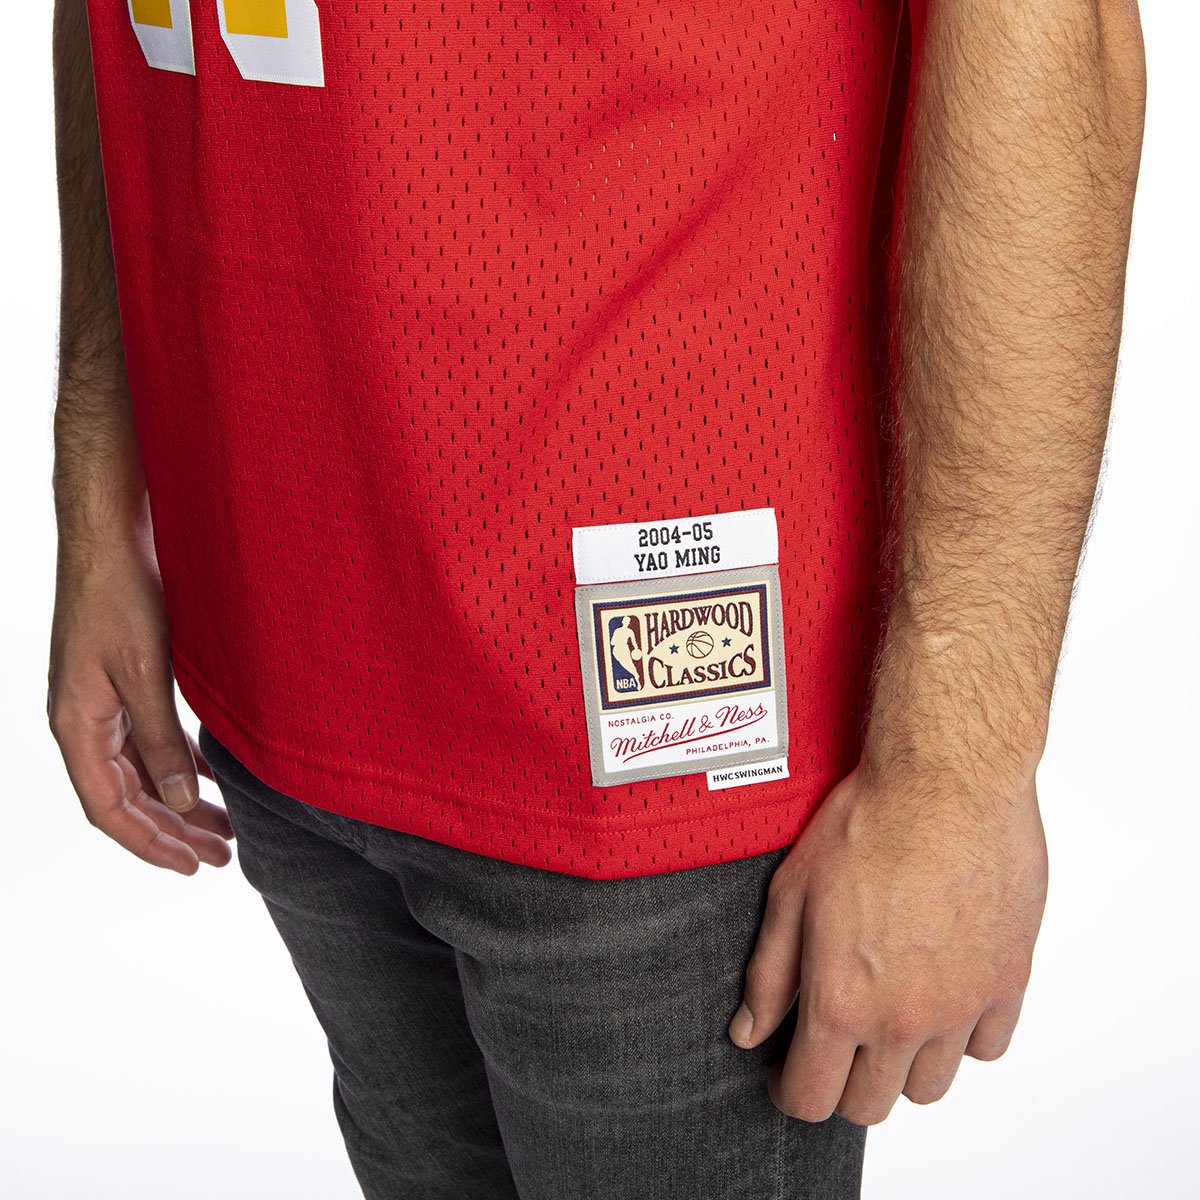 Mitchell & Ness Houston Rockets #11 Yao Ming university red Swingman Jersey